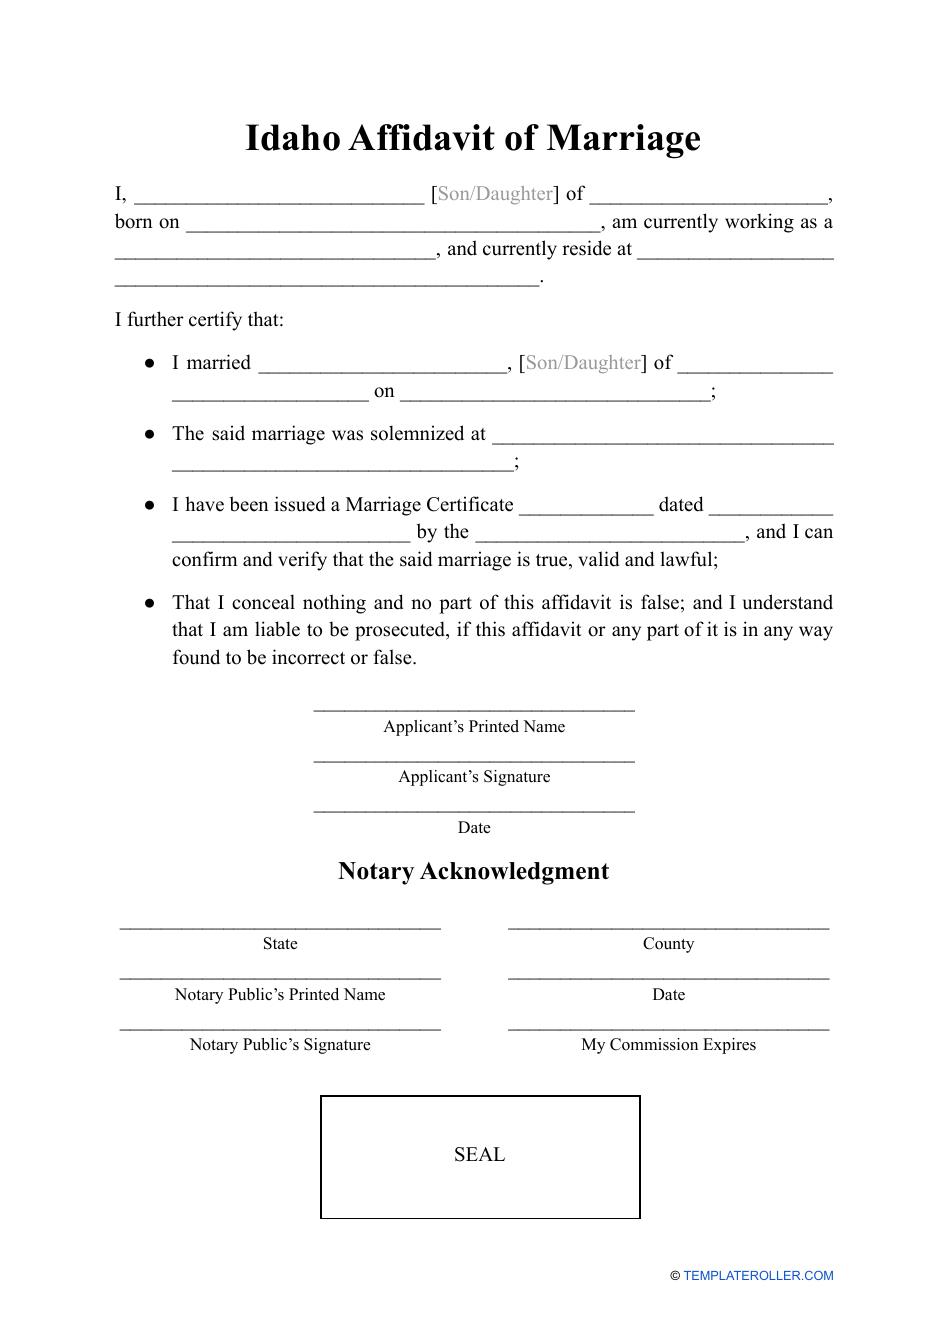 Affidavit of Marriage - Idaho, Page 1